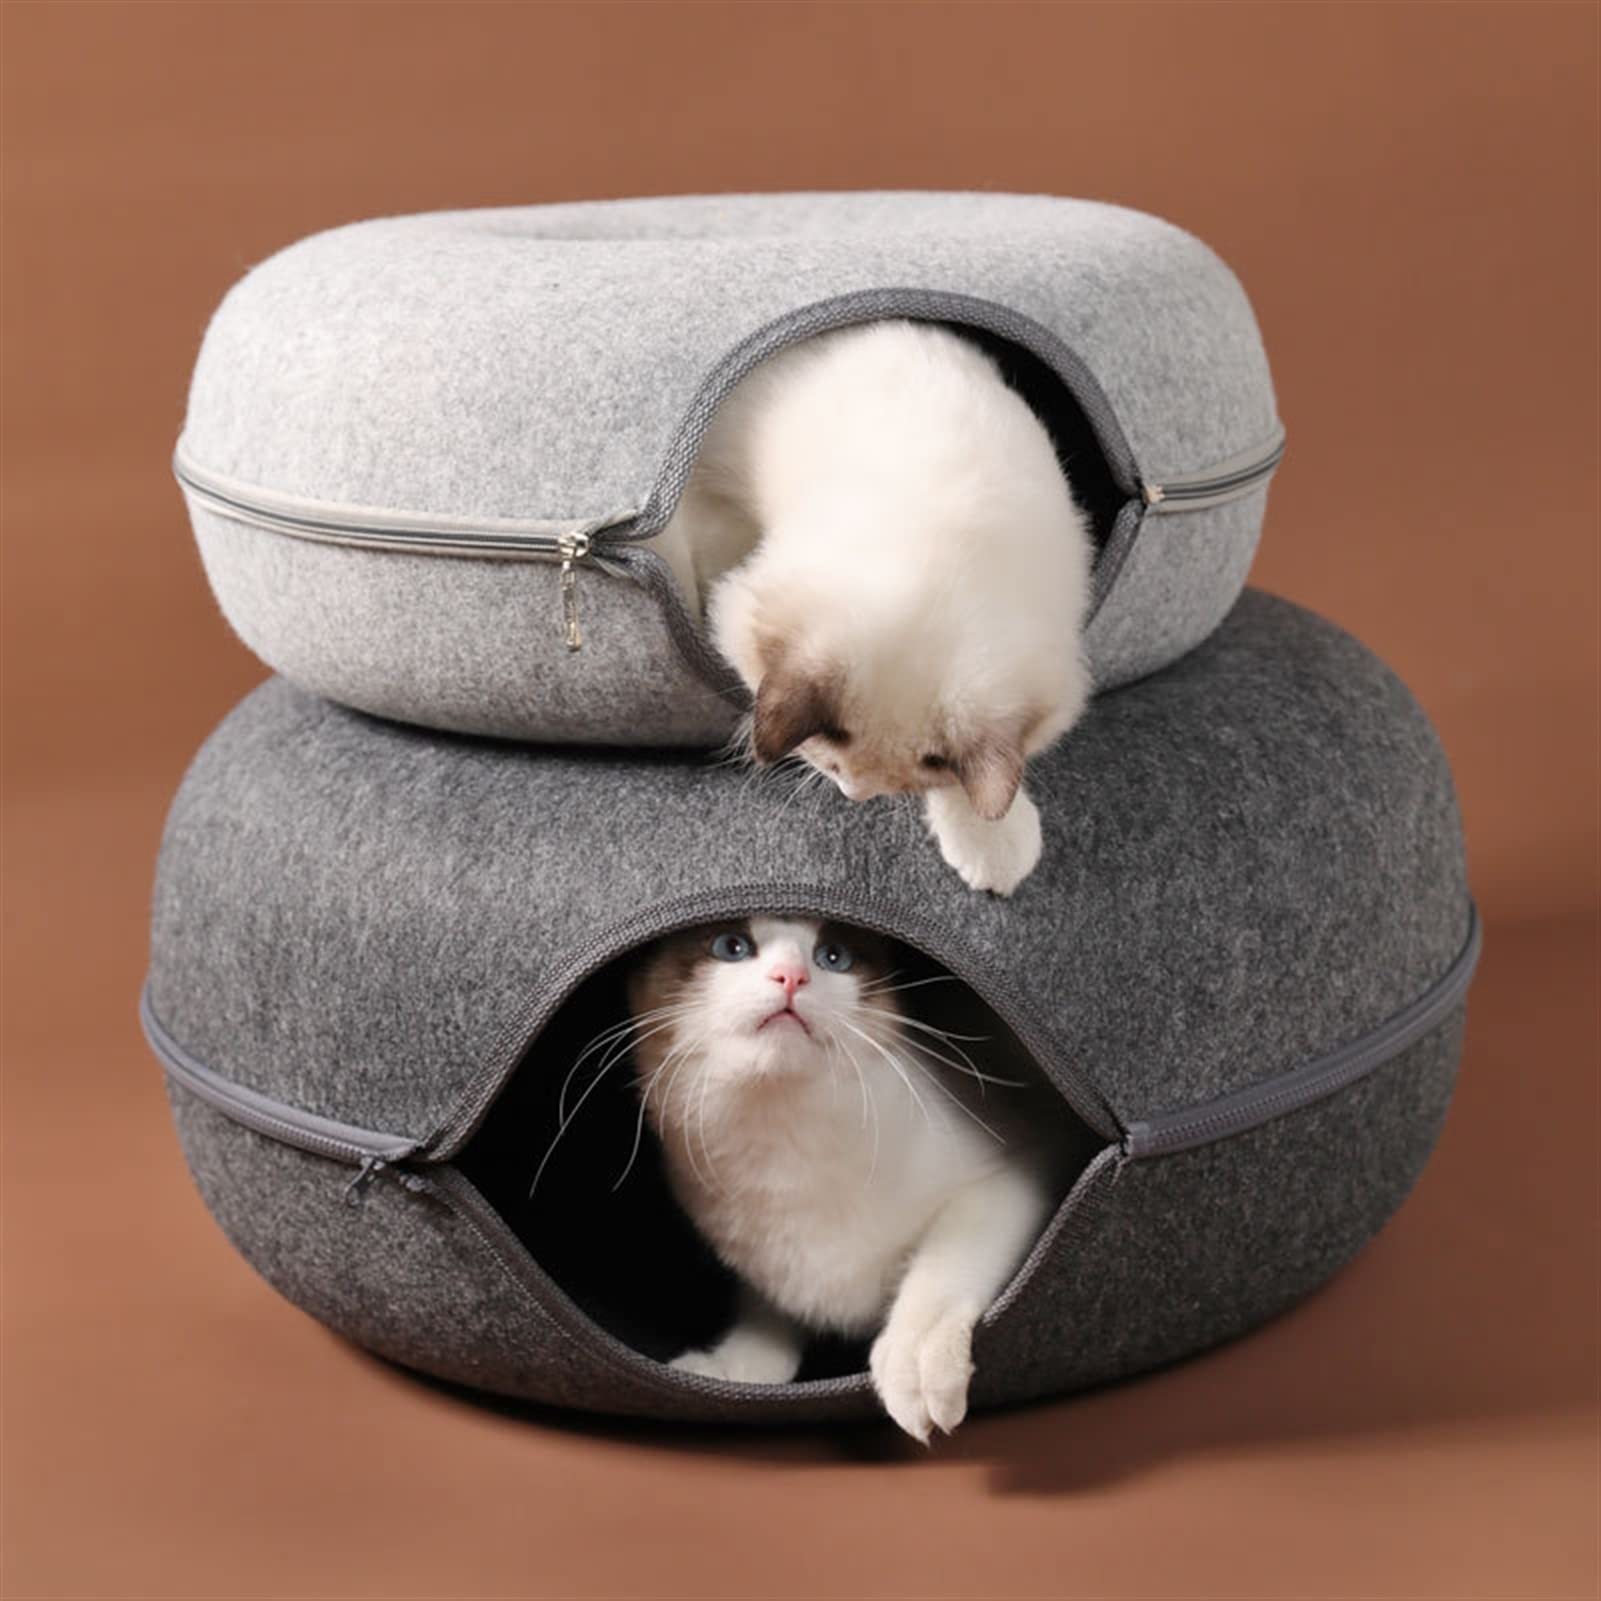 Brinquedo do túnel do jogo do gato - Túneis para gatos Tubo Brinquedos para  gatos - Brinquedos de